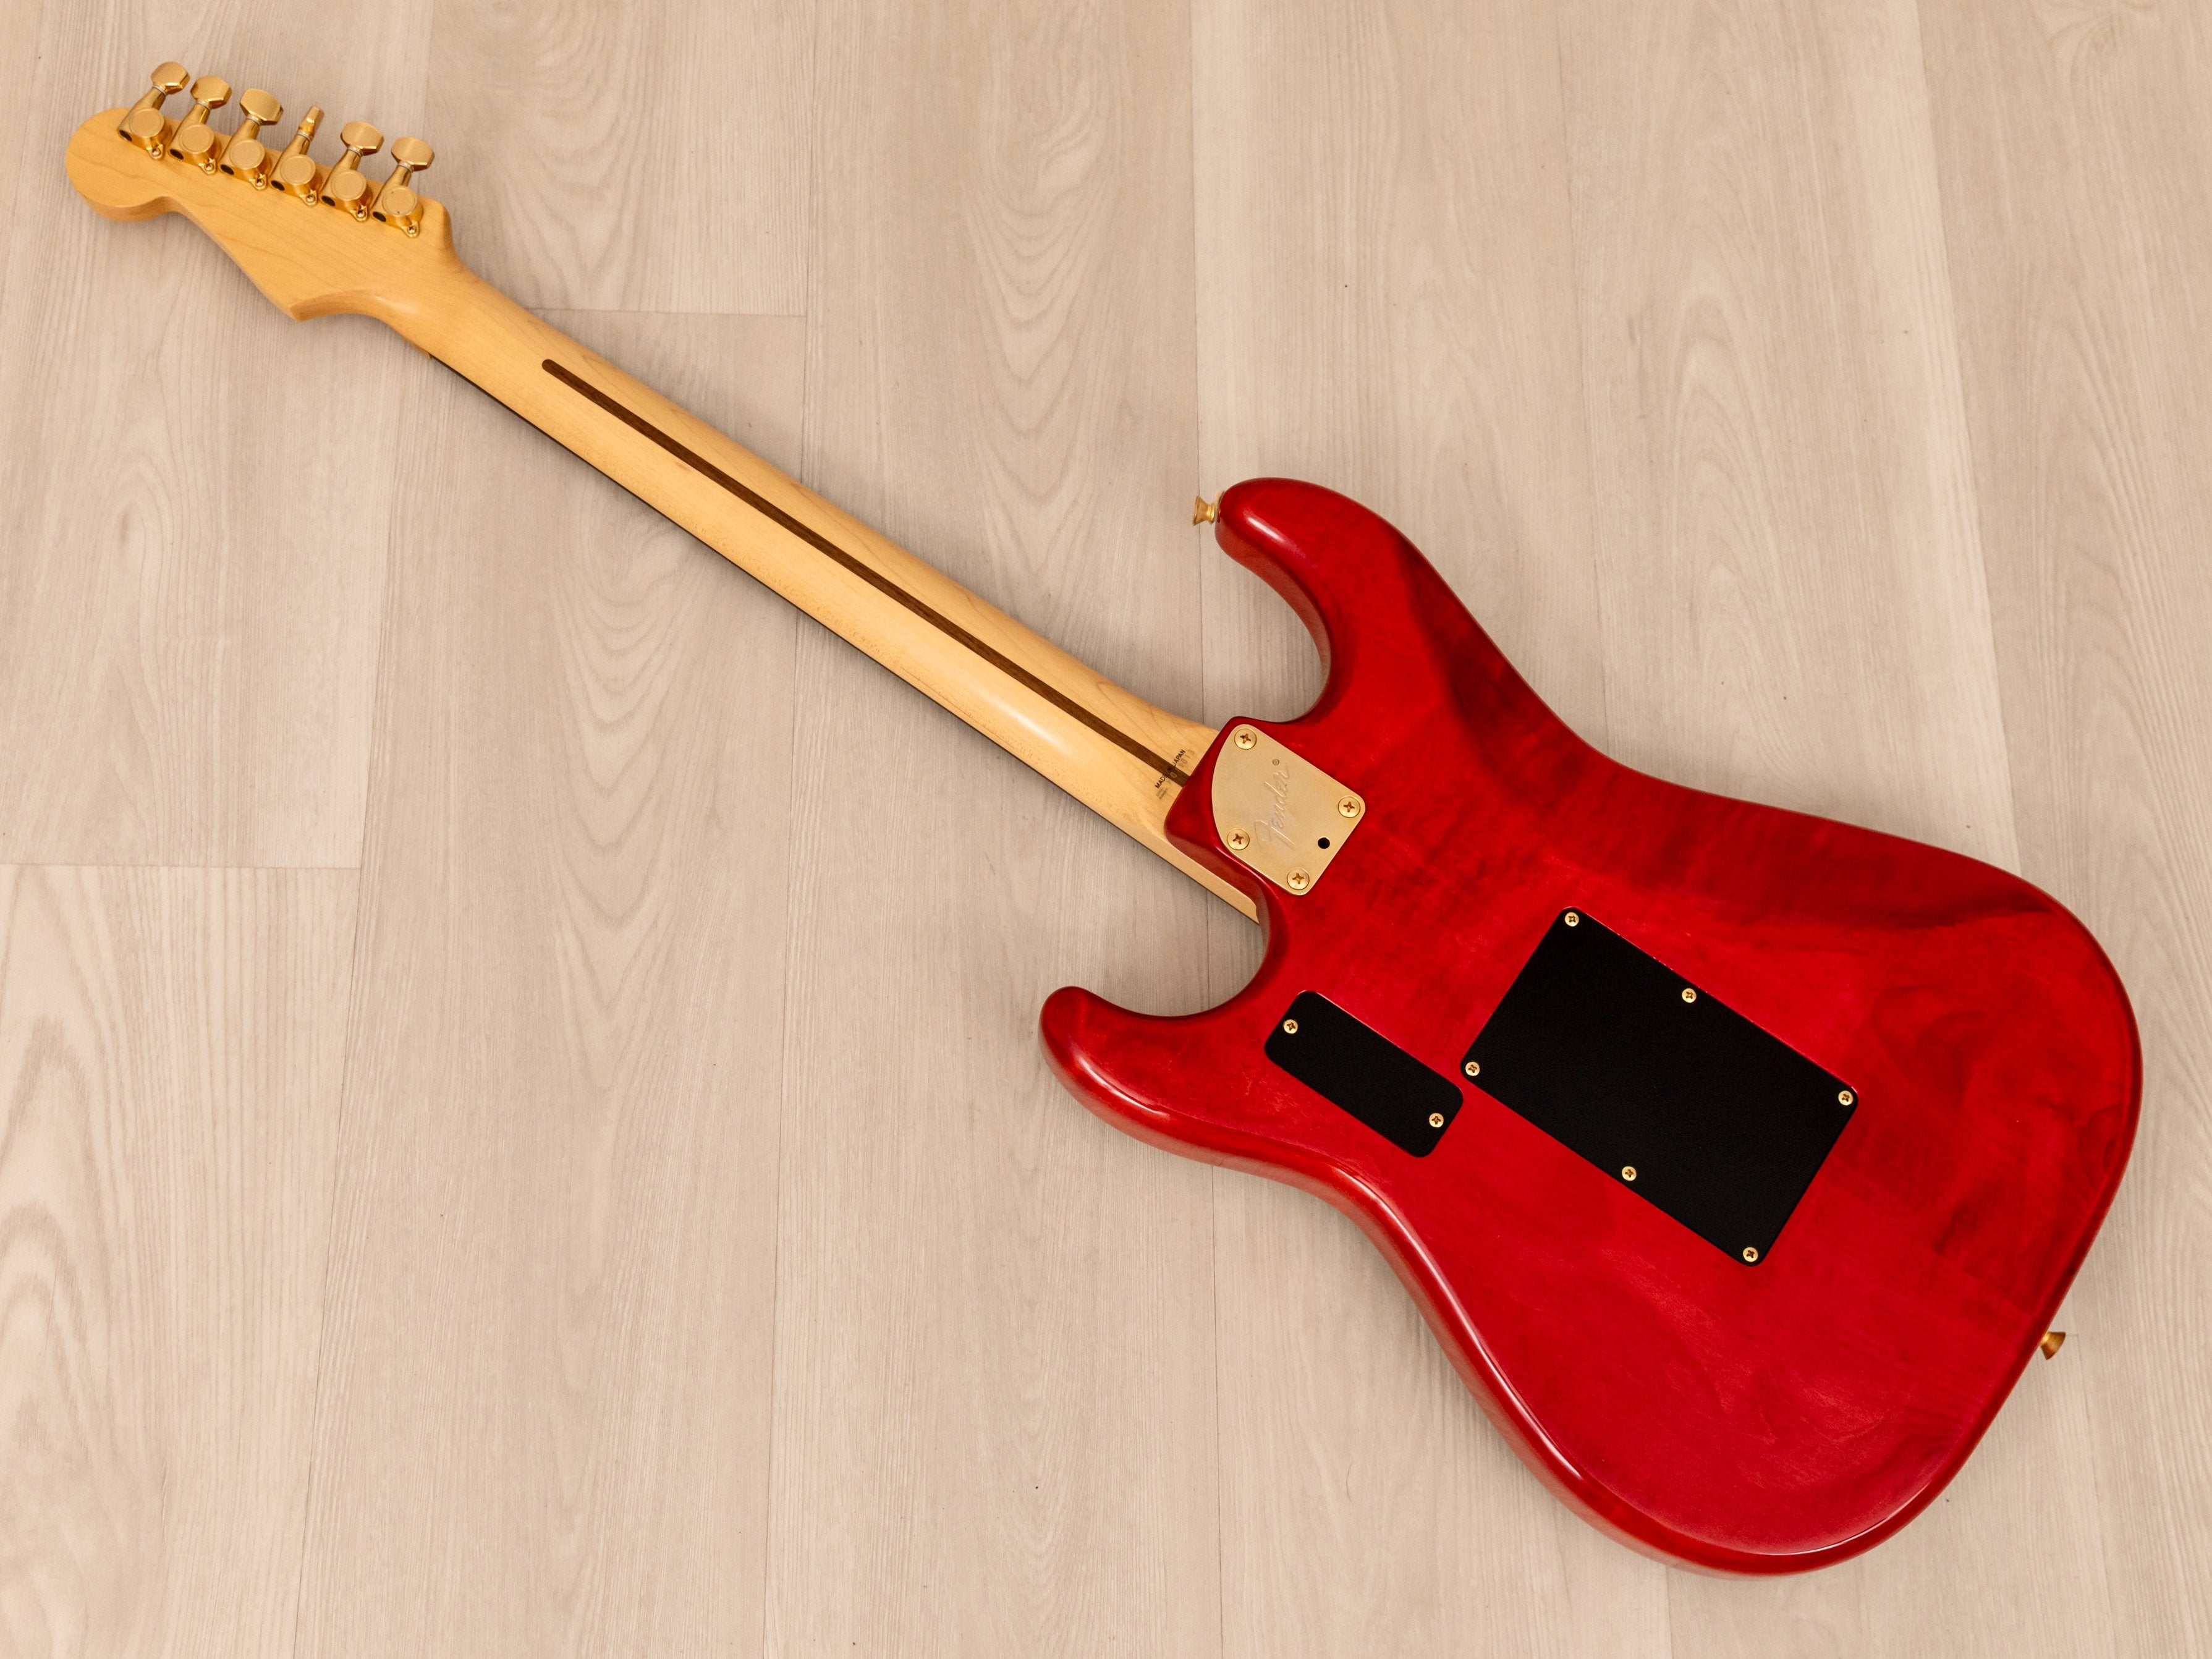 1991 Fender Stratocaster STR-1300 LSR Non-Catalog w/ USA Lace Sensor, Floyd Rose, Gold Hardware, Japan MIJ Fujigen